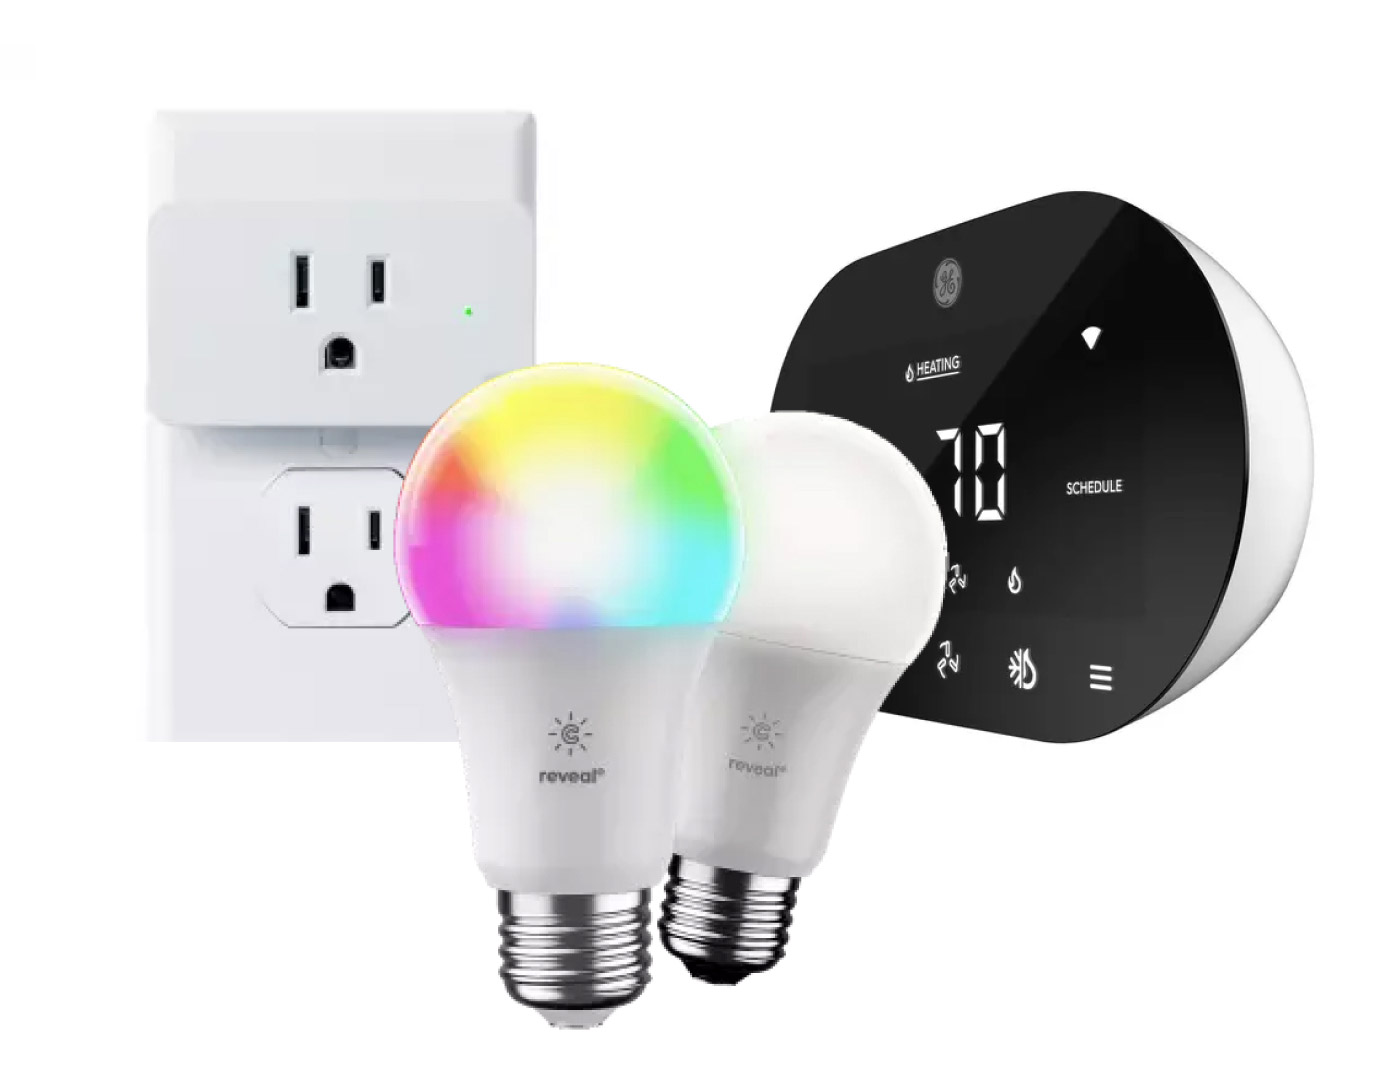 GE smart light bulbs, smart plug, and thermostat